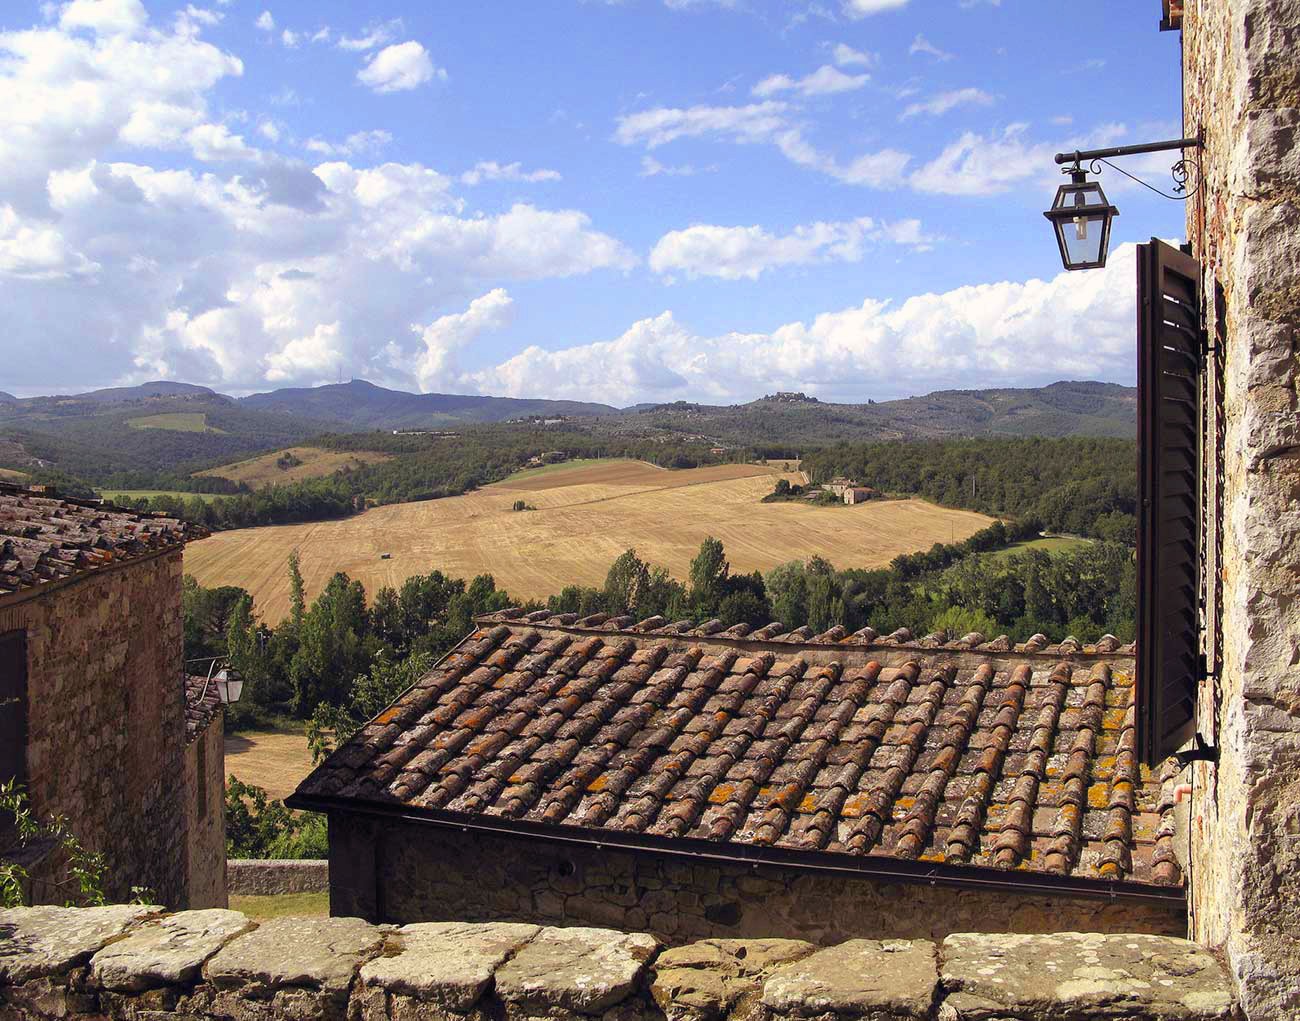 Tuscany accommodation